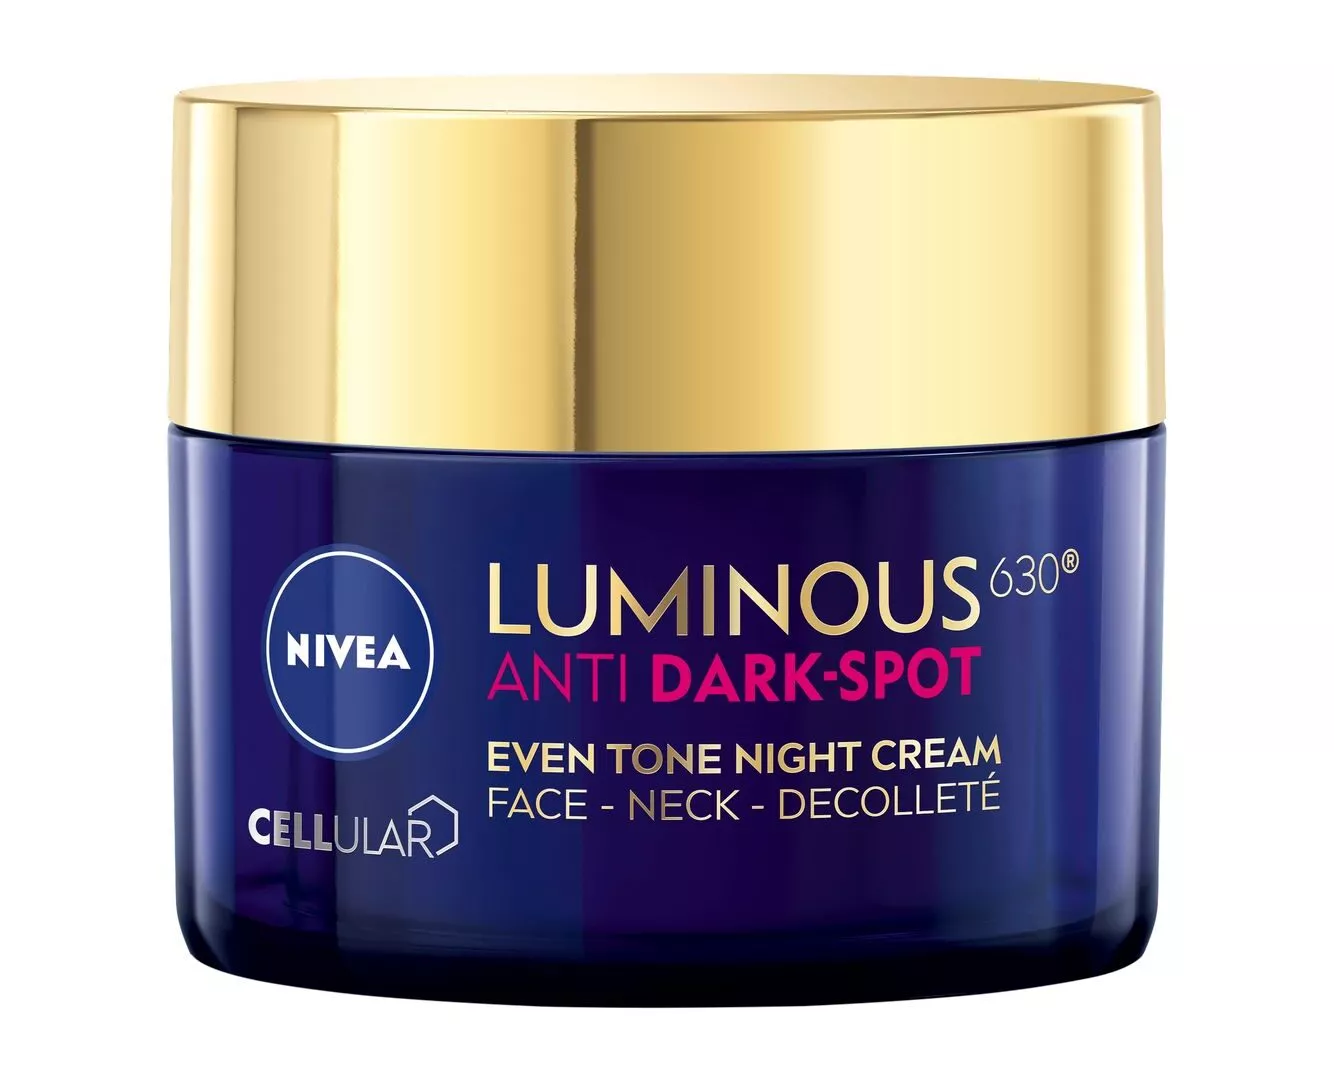 Nivea Luminous630 Anti Dark-Spot Even Tone Night Cream vähentää pigmenttimuutoksia yöunien aikana ja ehkäisee uusien syntymistä, 50 ml 25 e. 